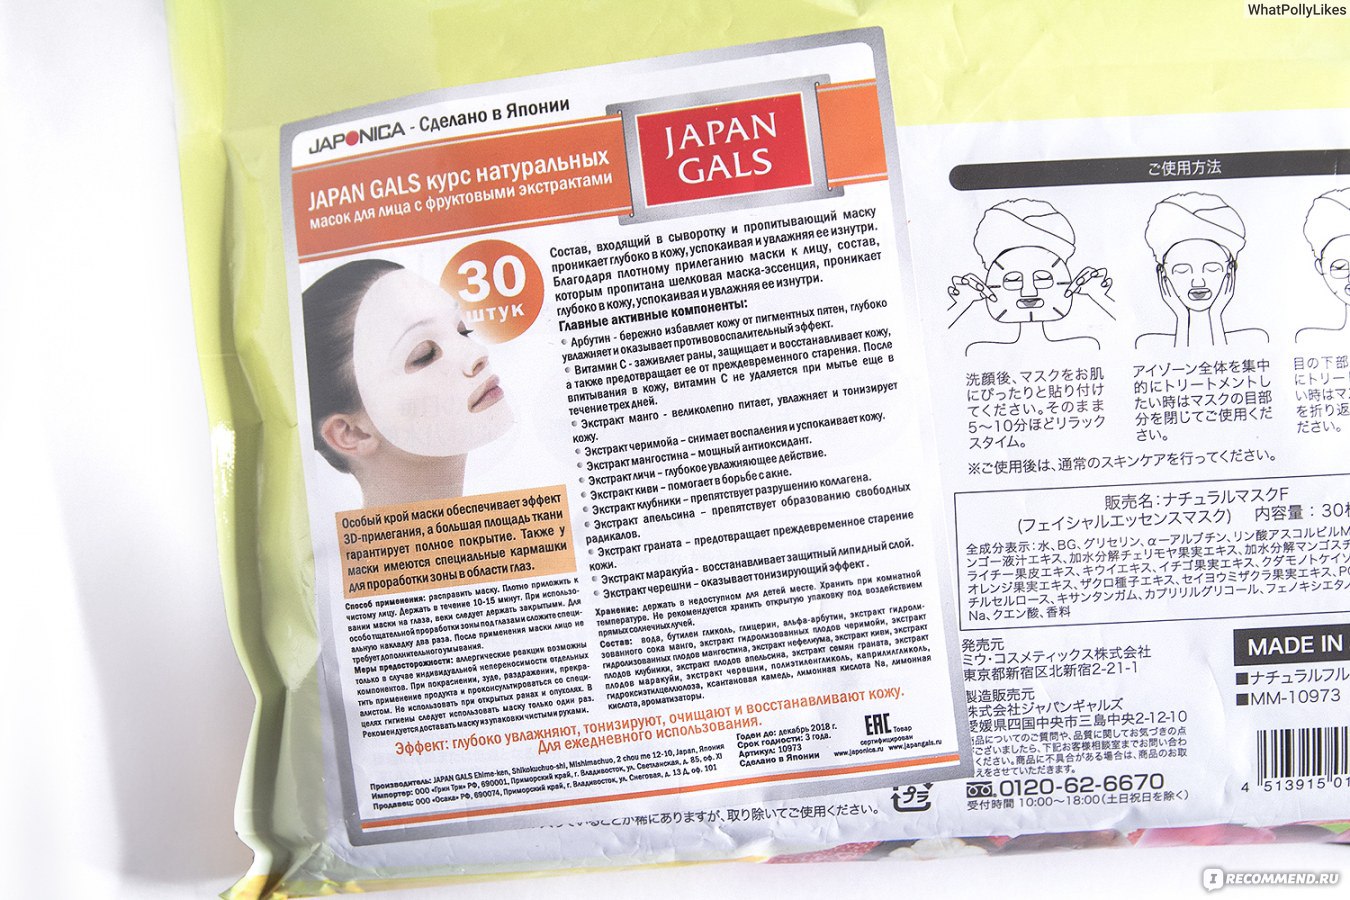 Маски на каждый день. Japan gals курс натуральных масок для лица с экстрактом жемчуга 30 шт. Курс натуральных масок для лица против акне «Japan gals».